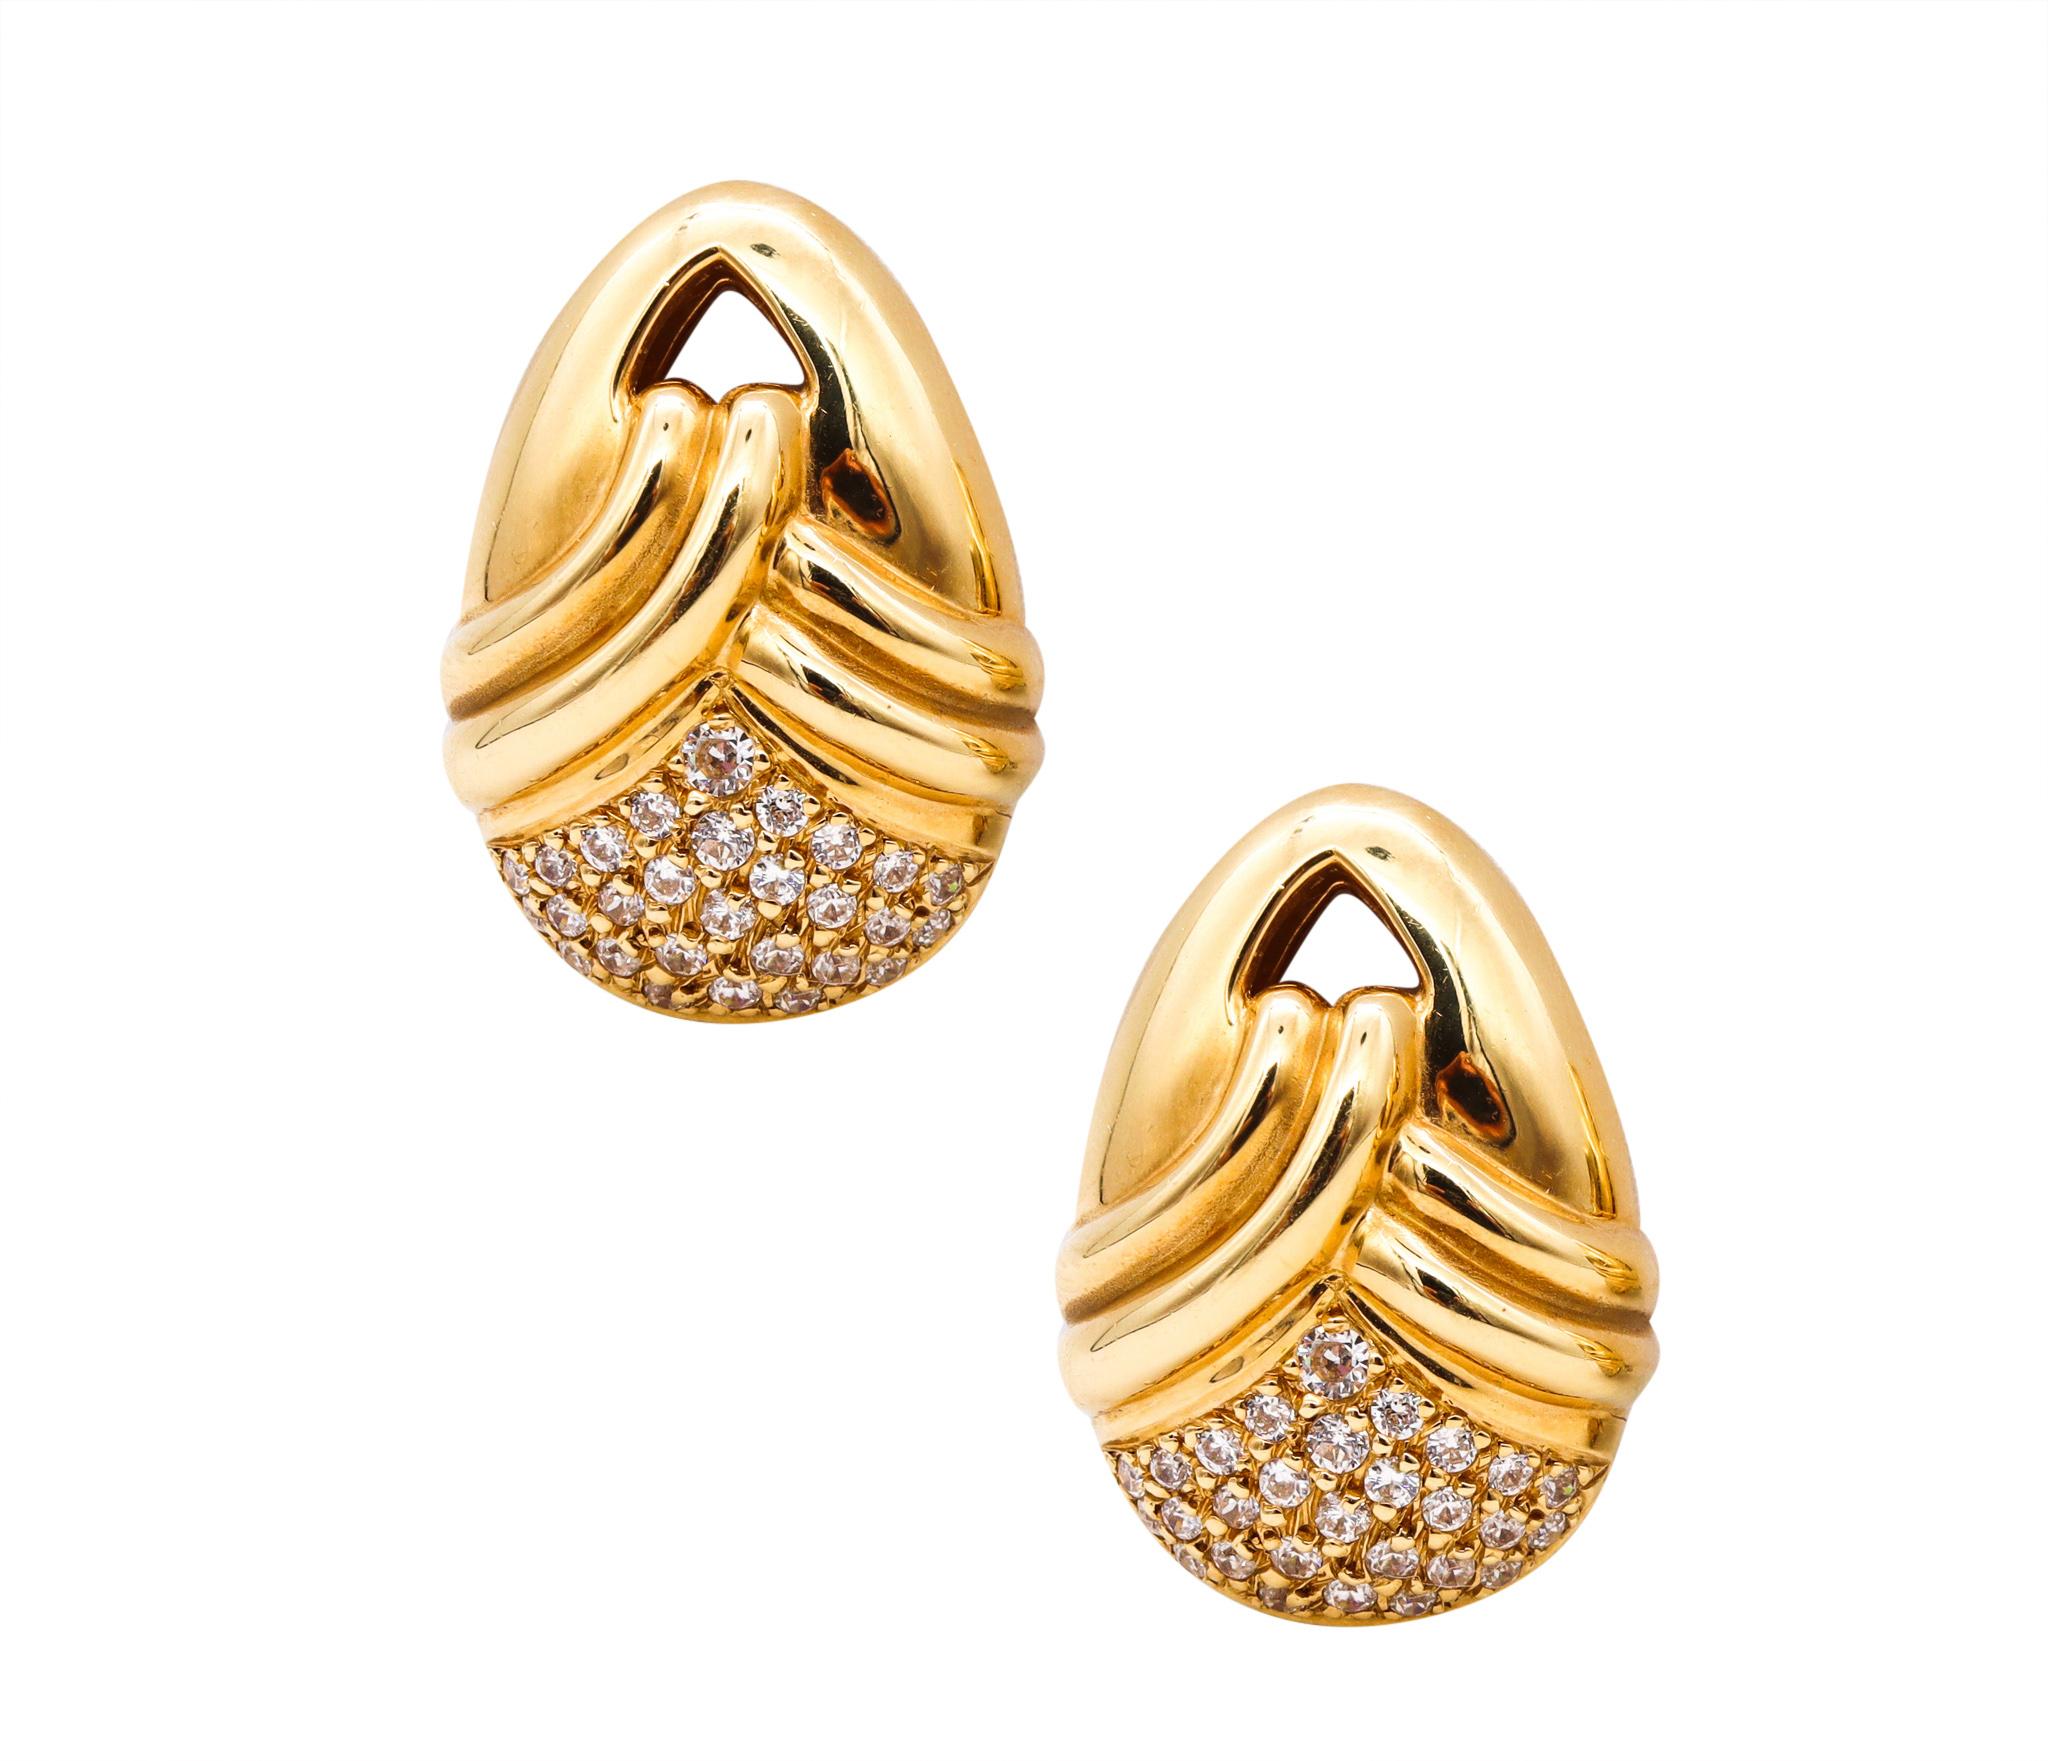 Ein Paar Clip-Ohrringe, entworfen von Michael Gates.

Wunderschönes, modernes, drapiertes Paar Clip-Ohrringe, gefertigt in New York City aus massivem 18-karätigem Gelbgold mit hochglanzpolierten Oberflächen. Er hat eine eiförmige Form mit drapiertem